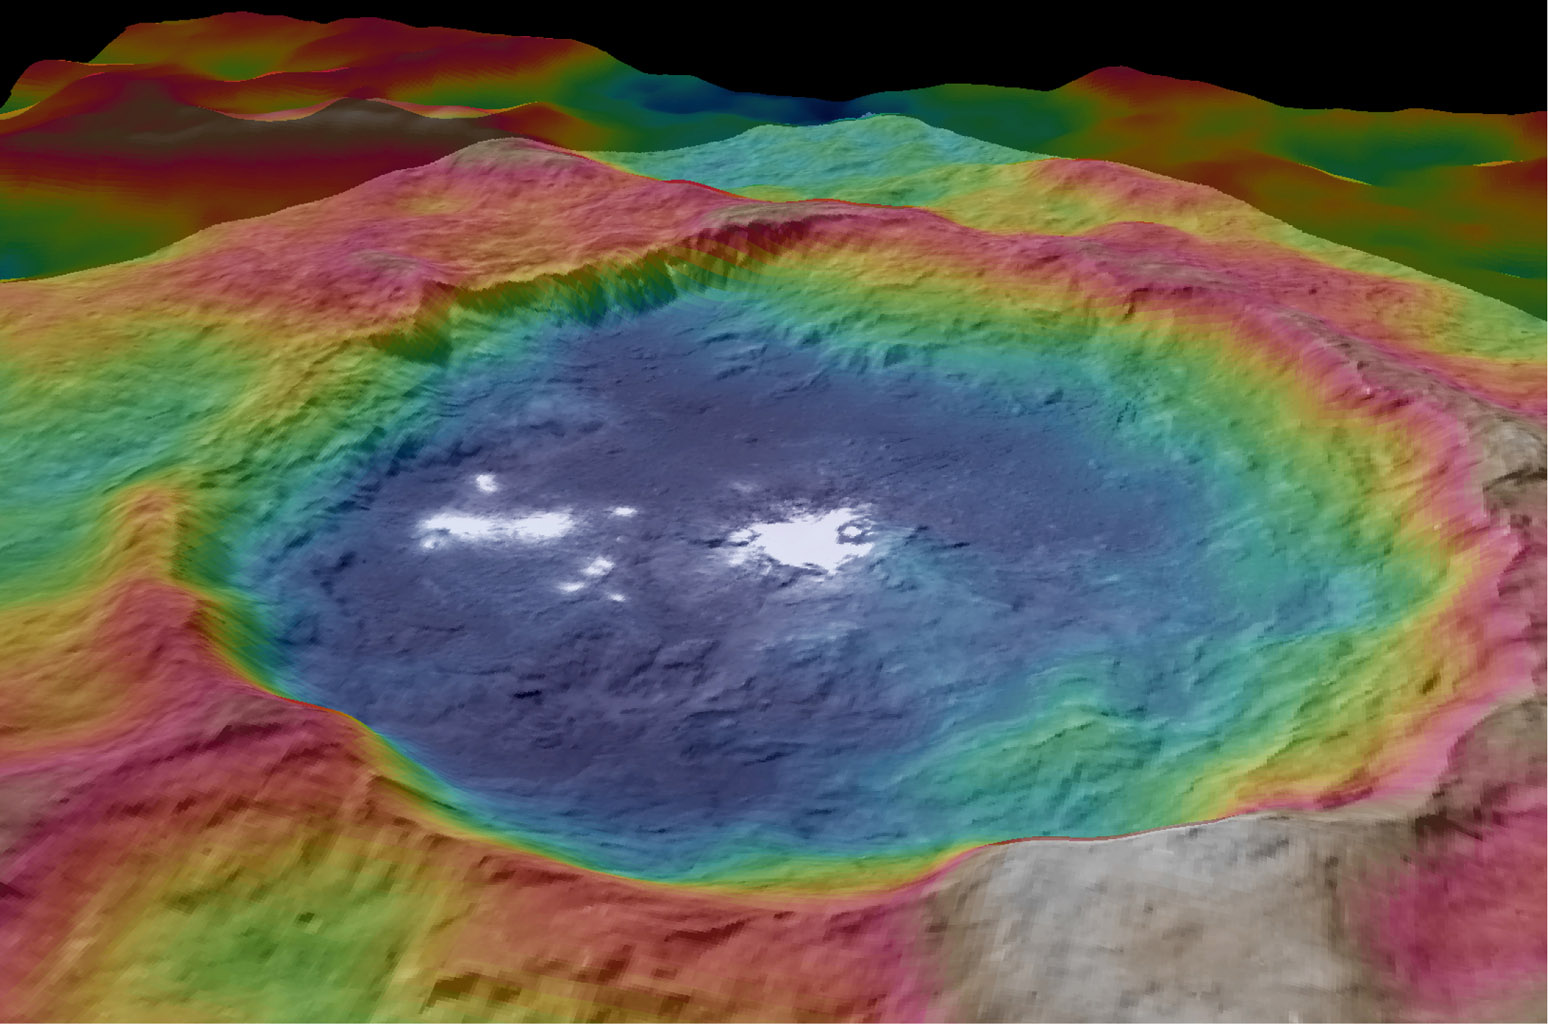 Large de 90 km, le cratère Occator doit sa célébrité aux énigmatiques taches blanches parsemées en son sein. Les couleurs correspondent aux différences d’altitude : en bleu, les plus basses et en rouge, les plus élevées. © Nasa, JPL-Caltech, UCLA, MPS, DLR, IDA